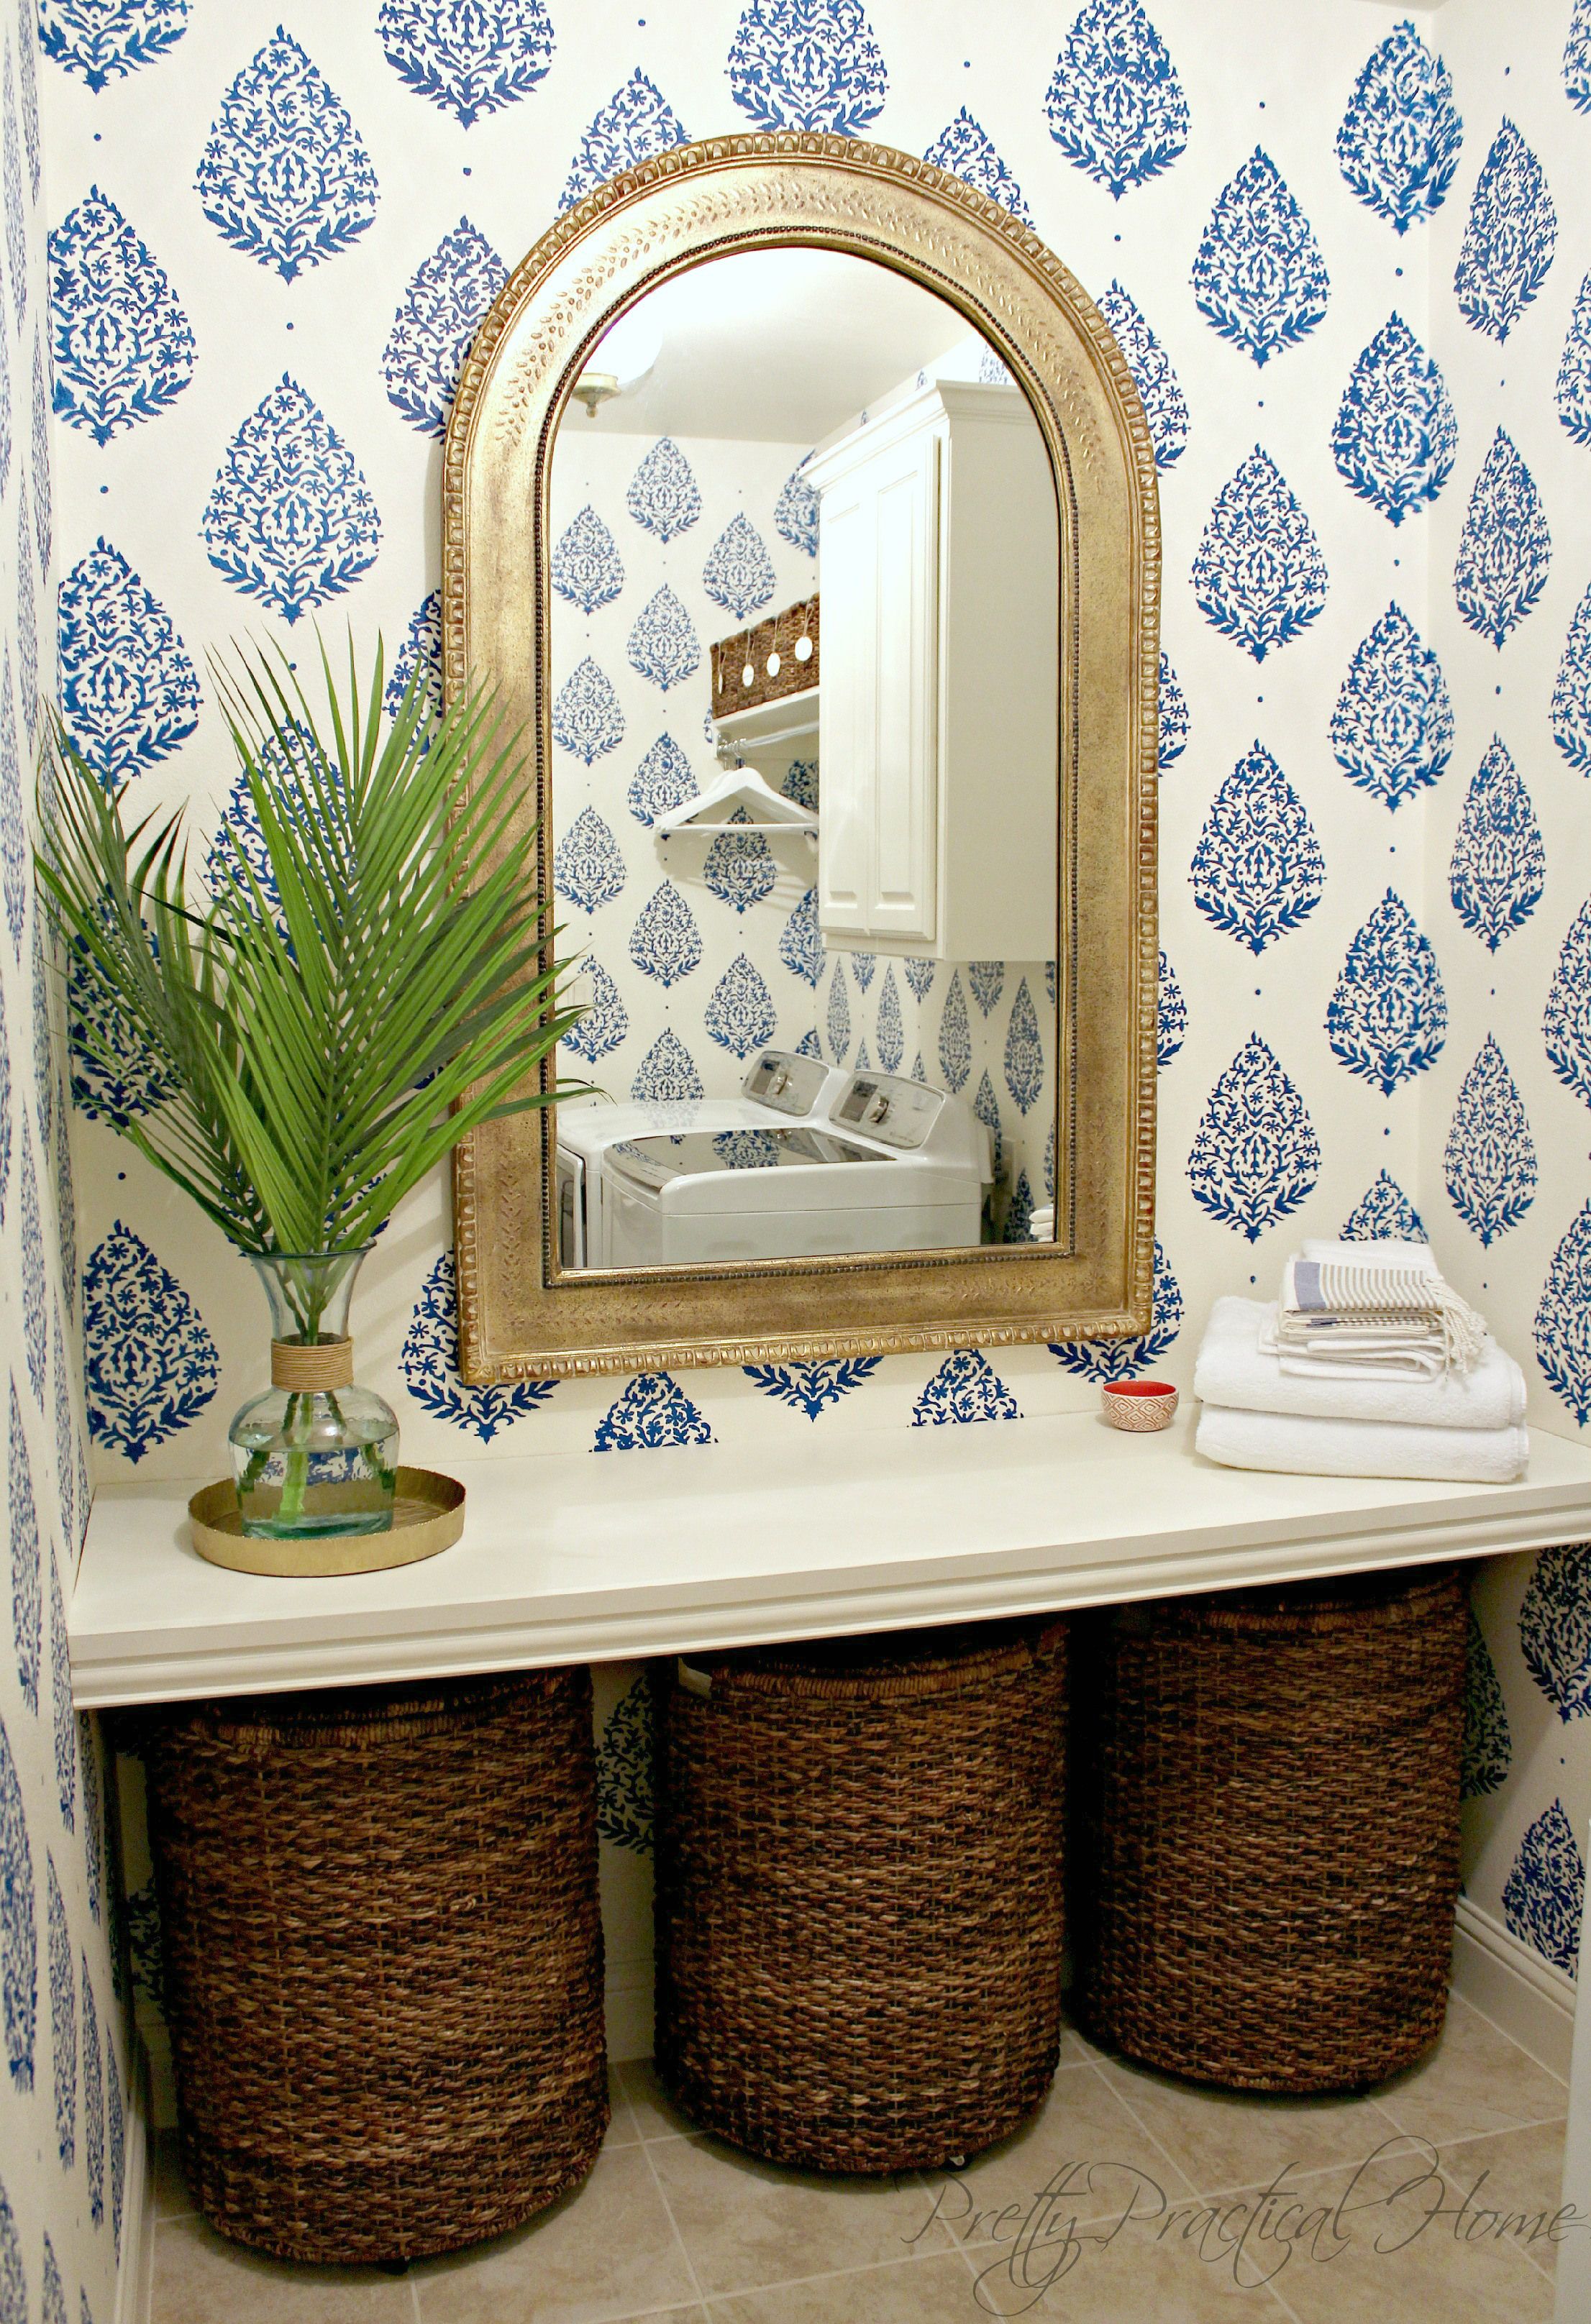 billige badezimmertapete,zimmer,wand,möbel,regal,spiegel